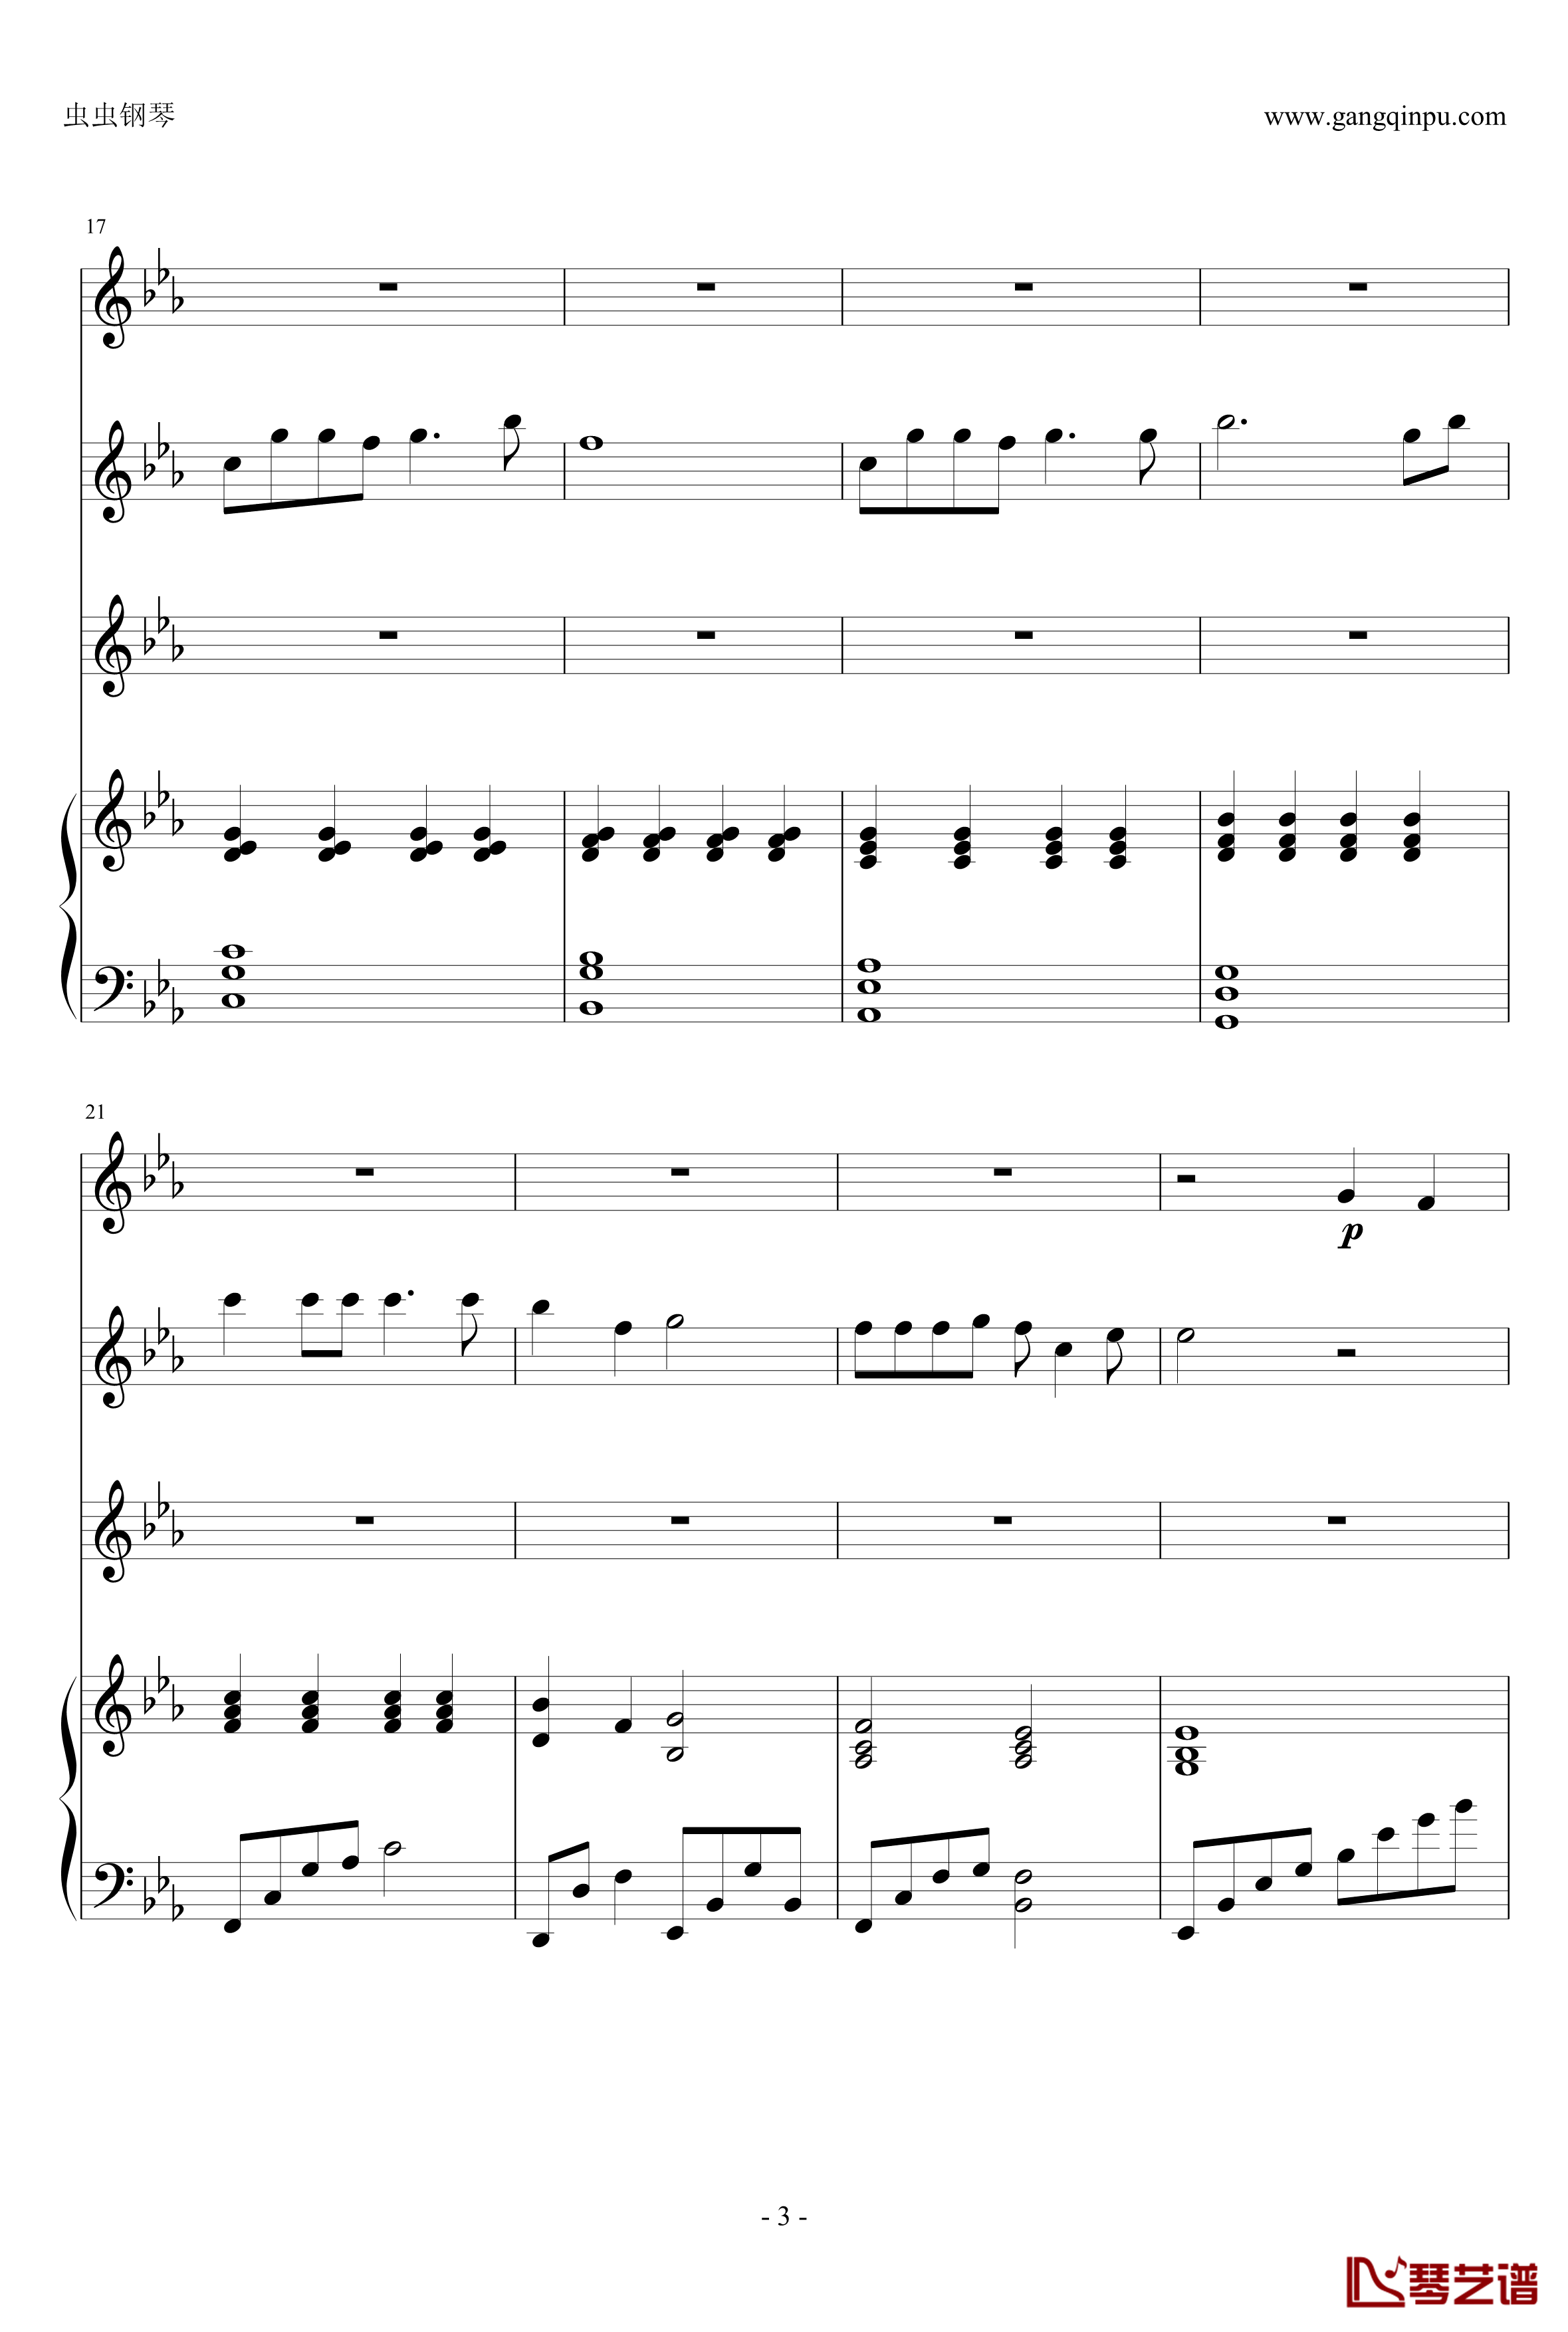 幽灵公主钢琴谱-合奏版总谱-二胡、古筝、小提琴、钢琴-久石让3